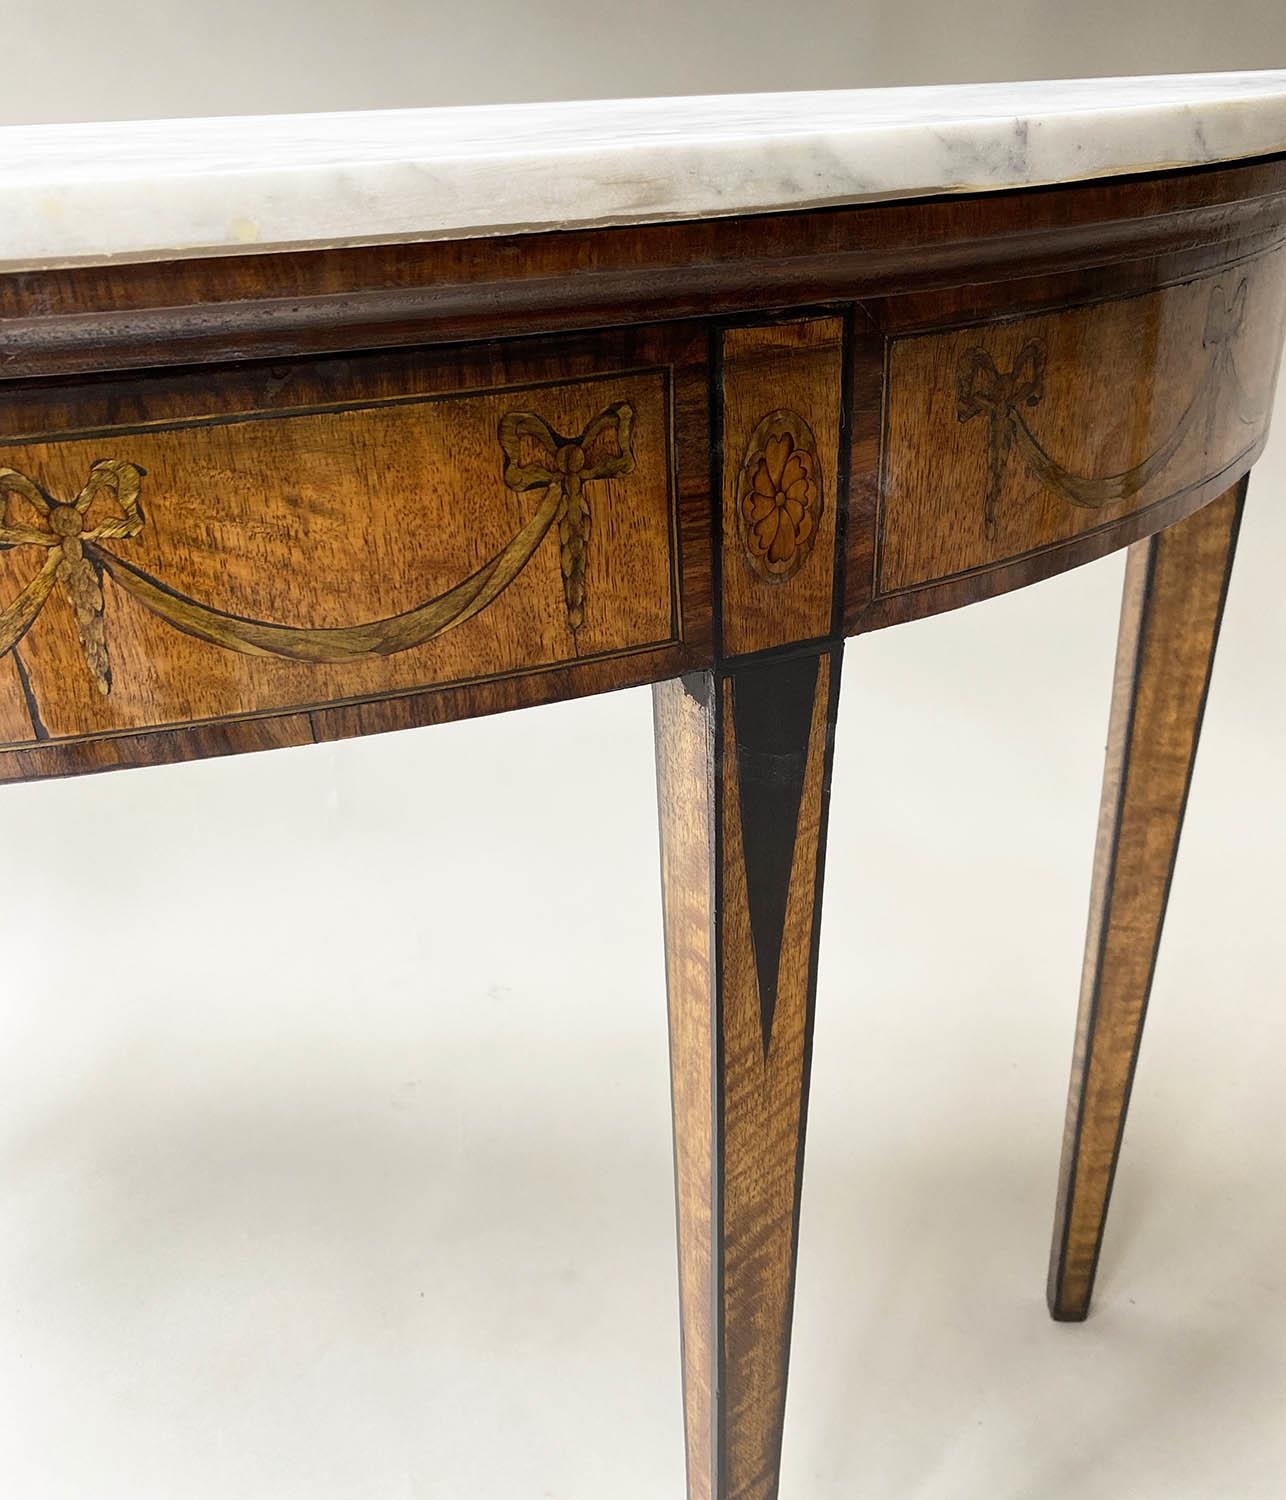 PIER TABLE, George III manner, after Robert Adam semi elliptical arabiscata marble top, satinwood, - Image 2 of 8